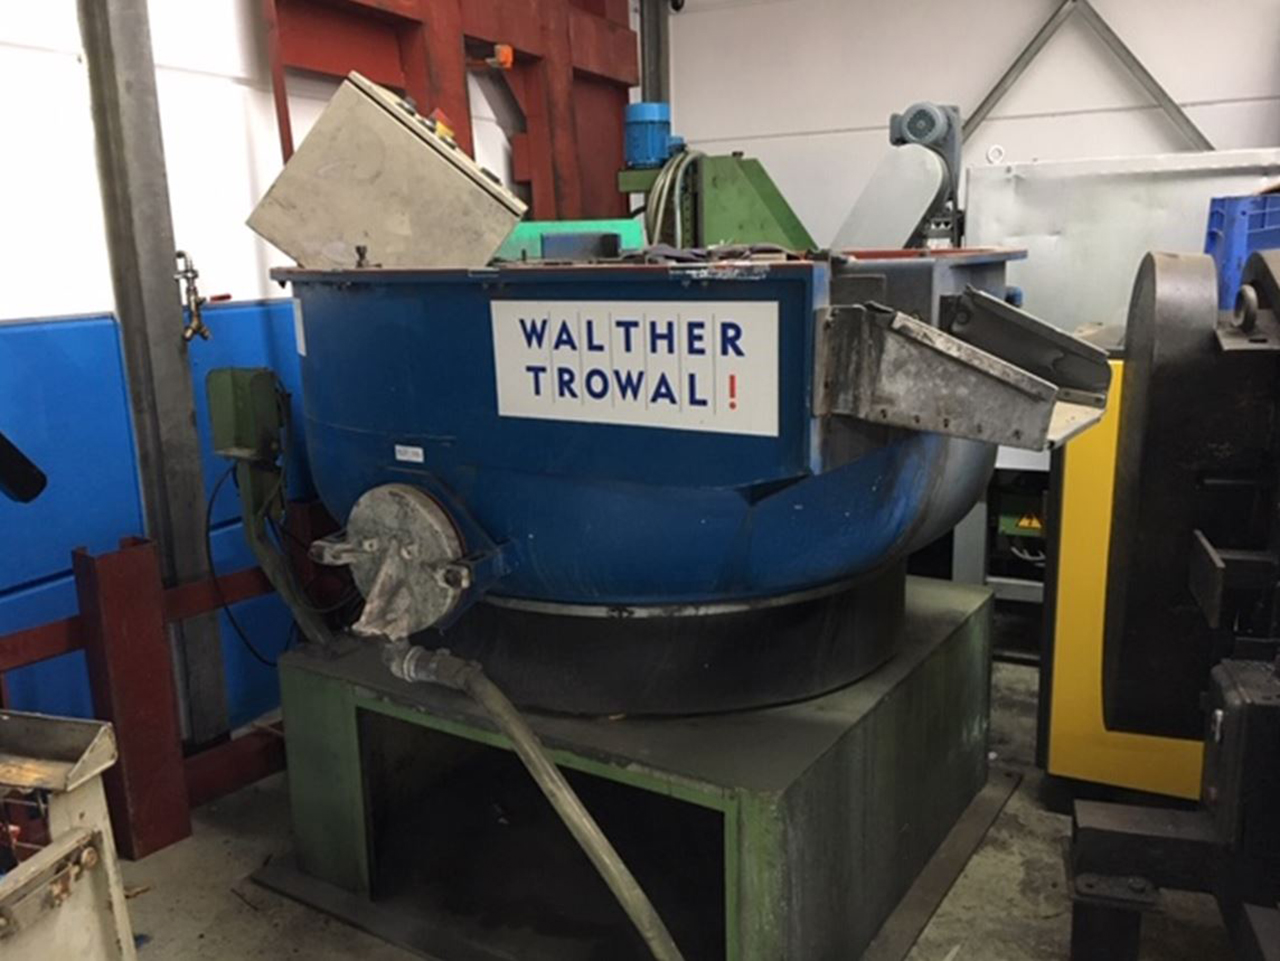 Walter Trowal S7 1 máquina de acabado vibratoria rotativa GA2229, usada